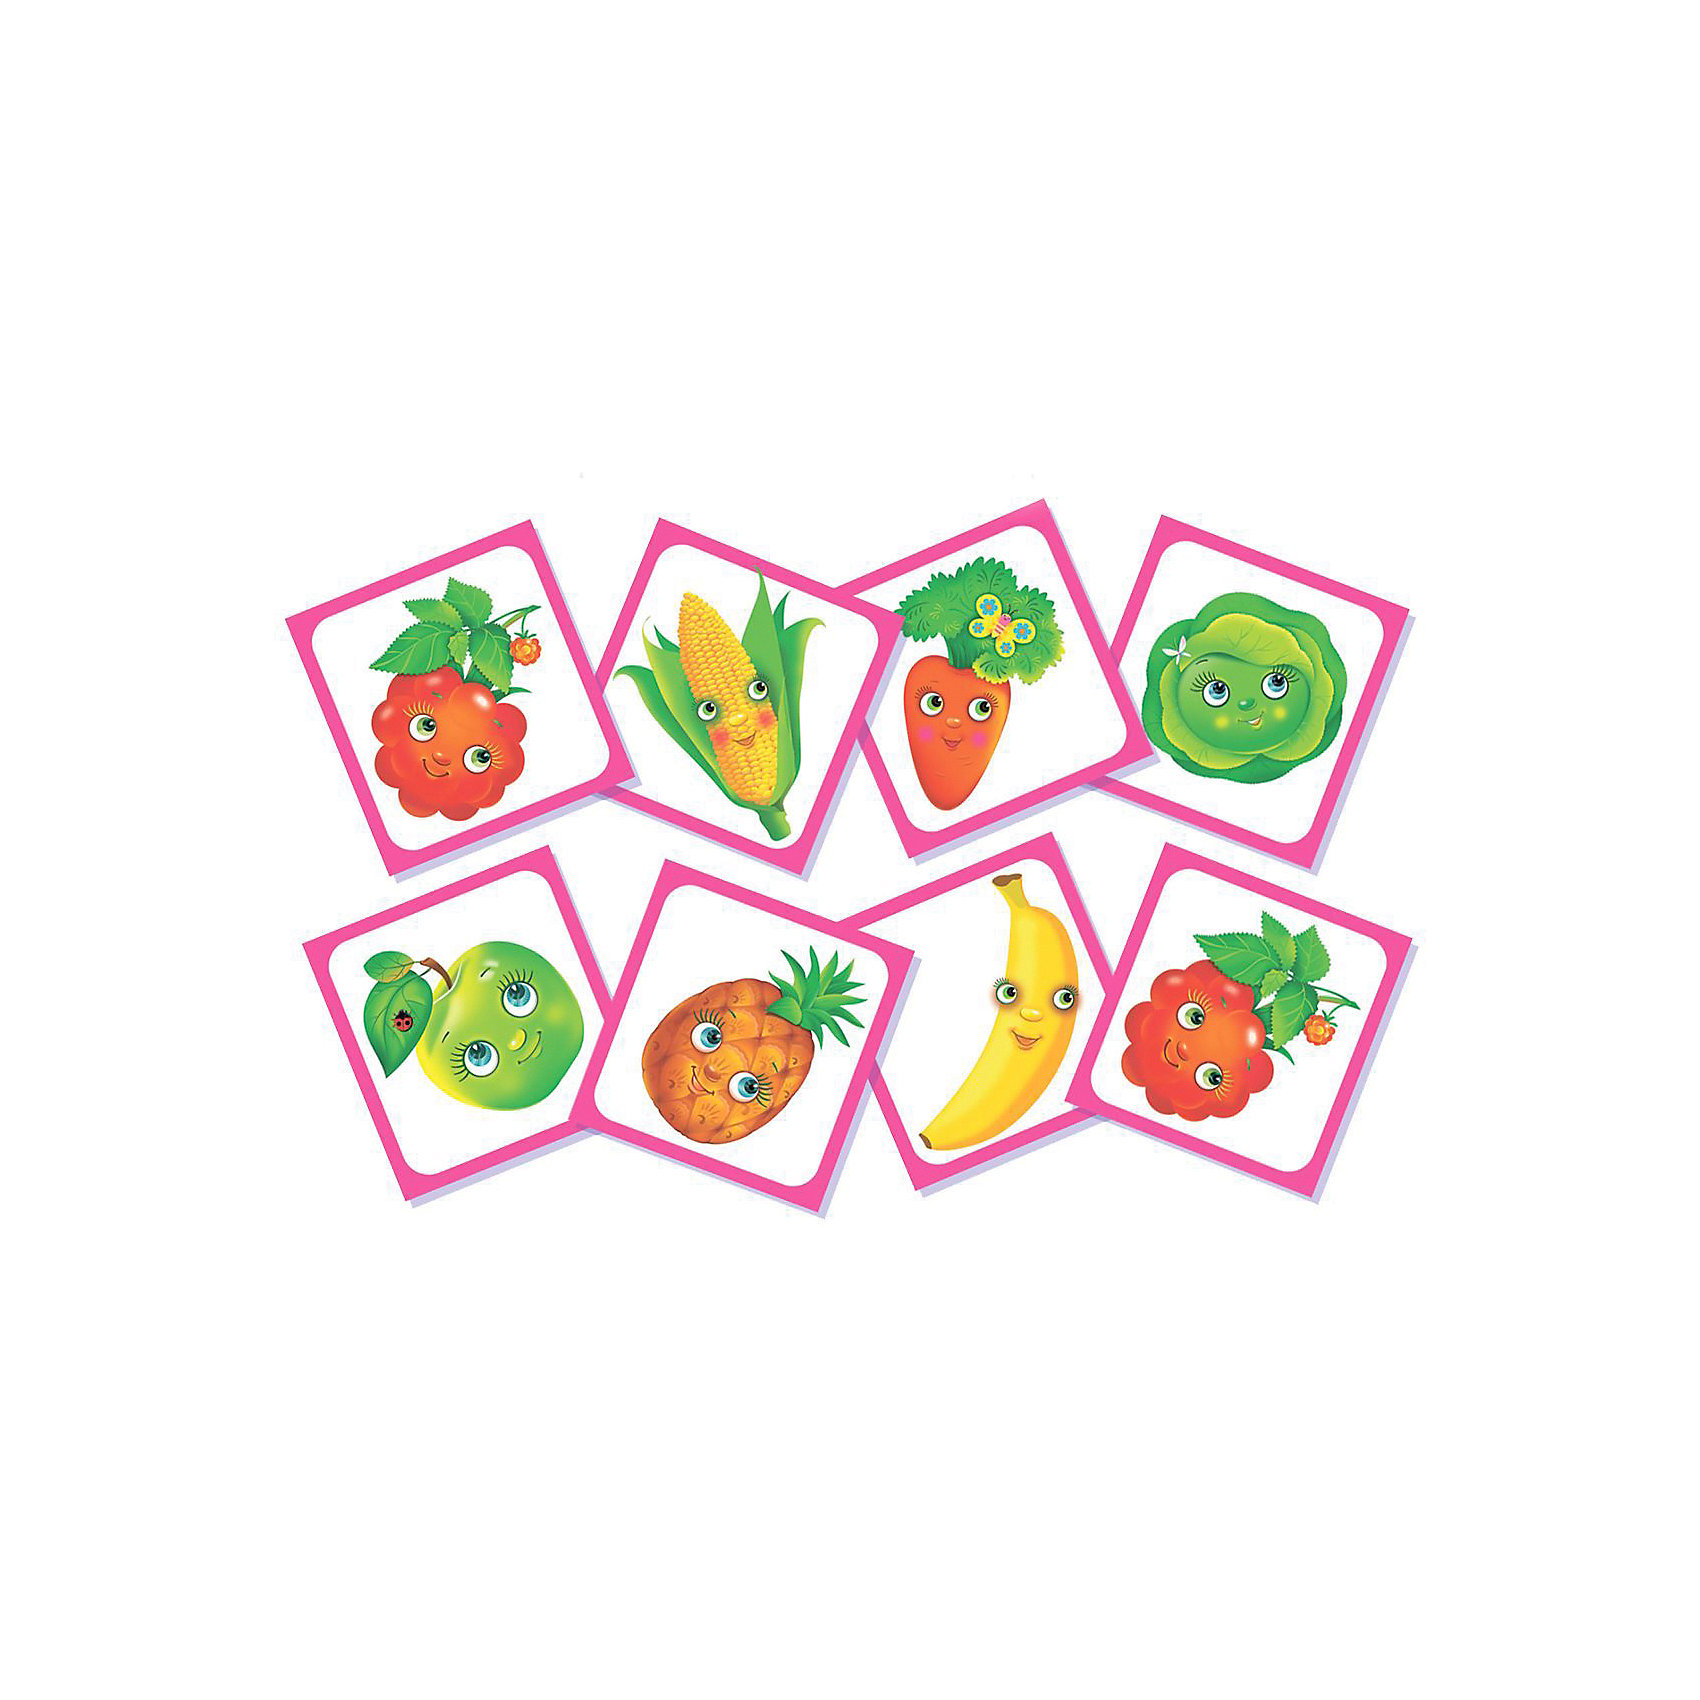 фото Игра-мемори дрофа-медиа овощи, фрукты, ягоды